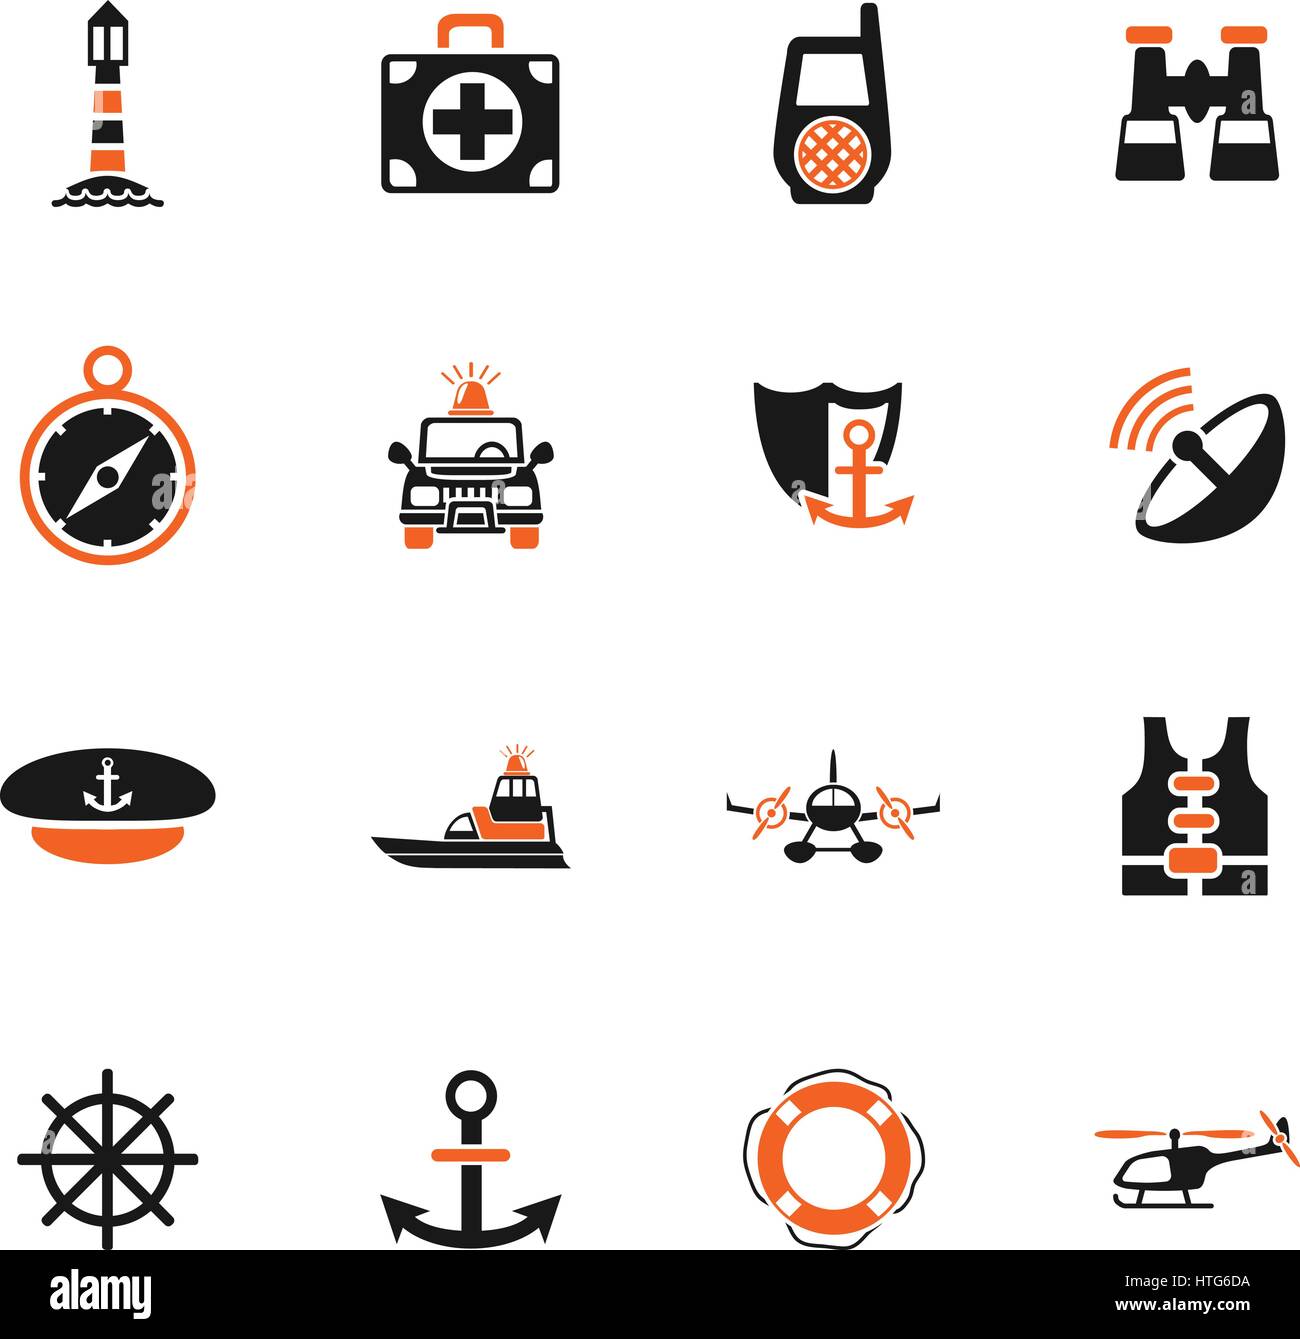 coastguard web icons for user interface design Stock Vector